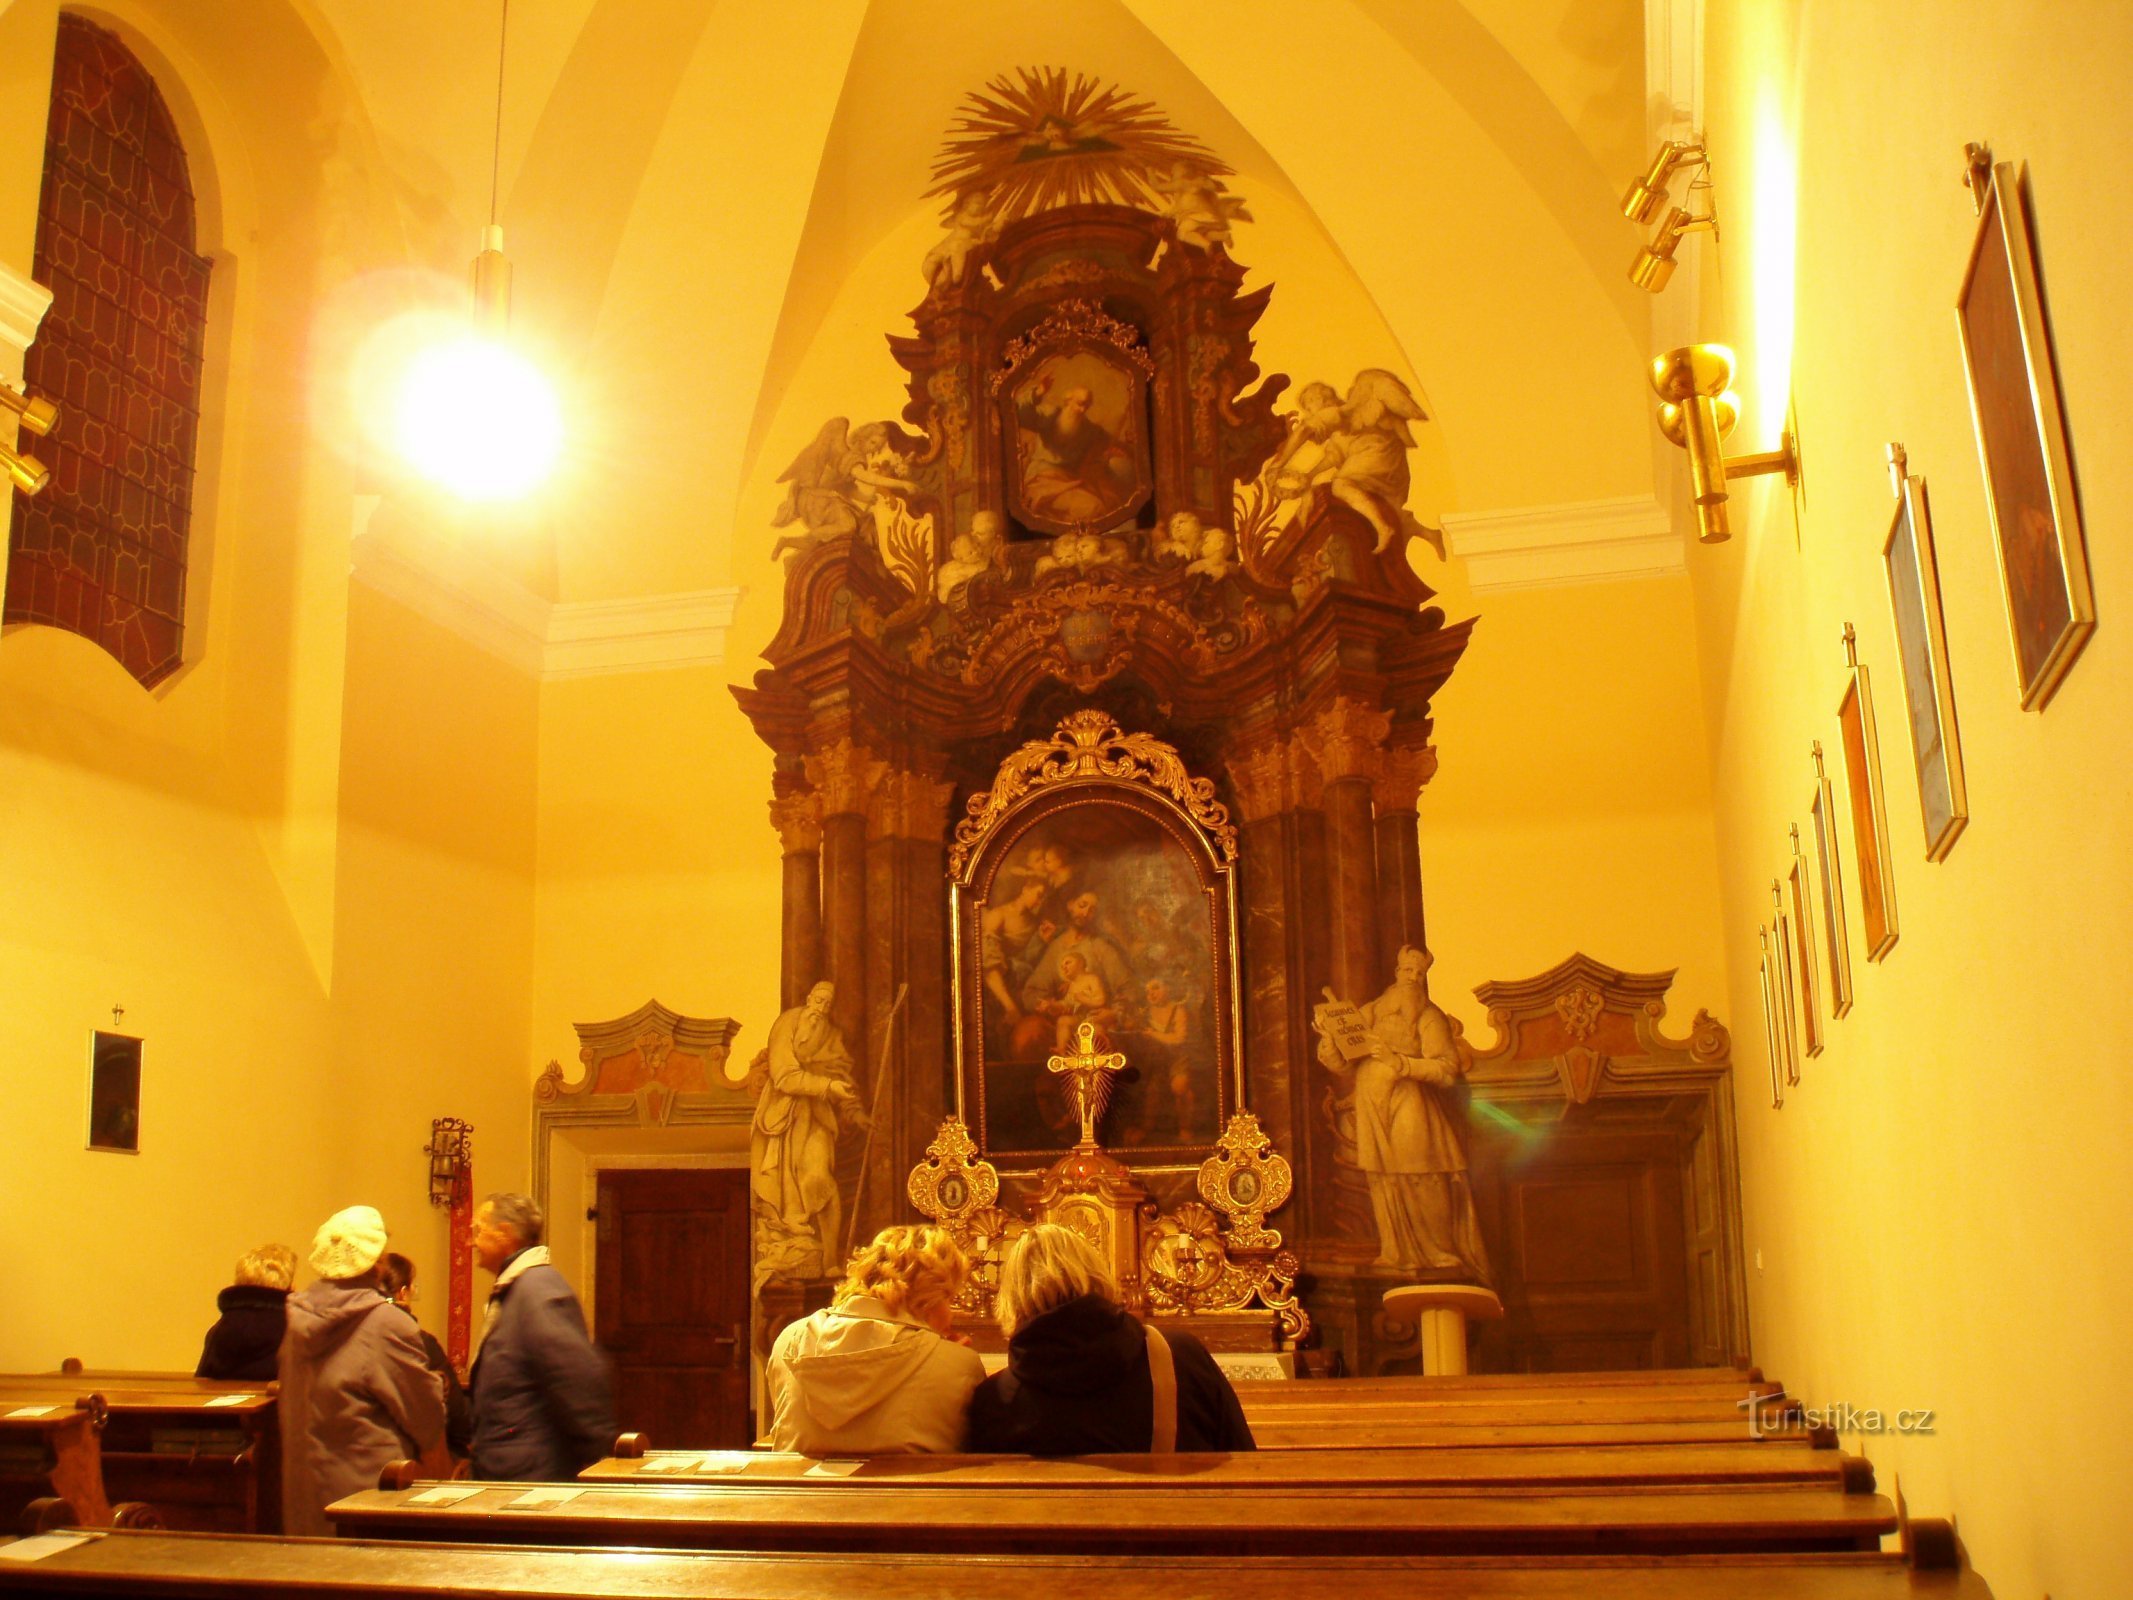 Nội thất của nhà nguyện St. Josefa (Hradec Králové, 19.3.2010)